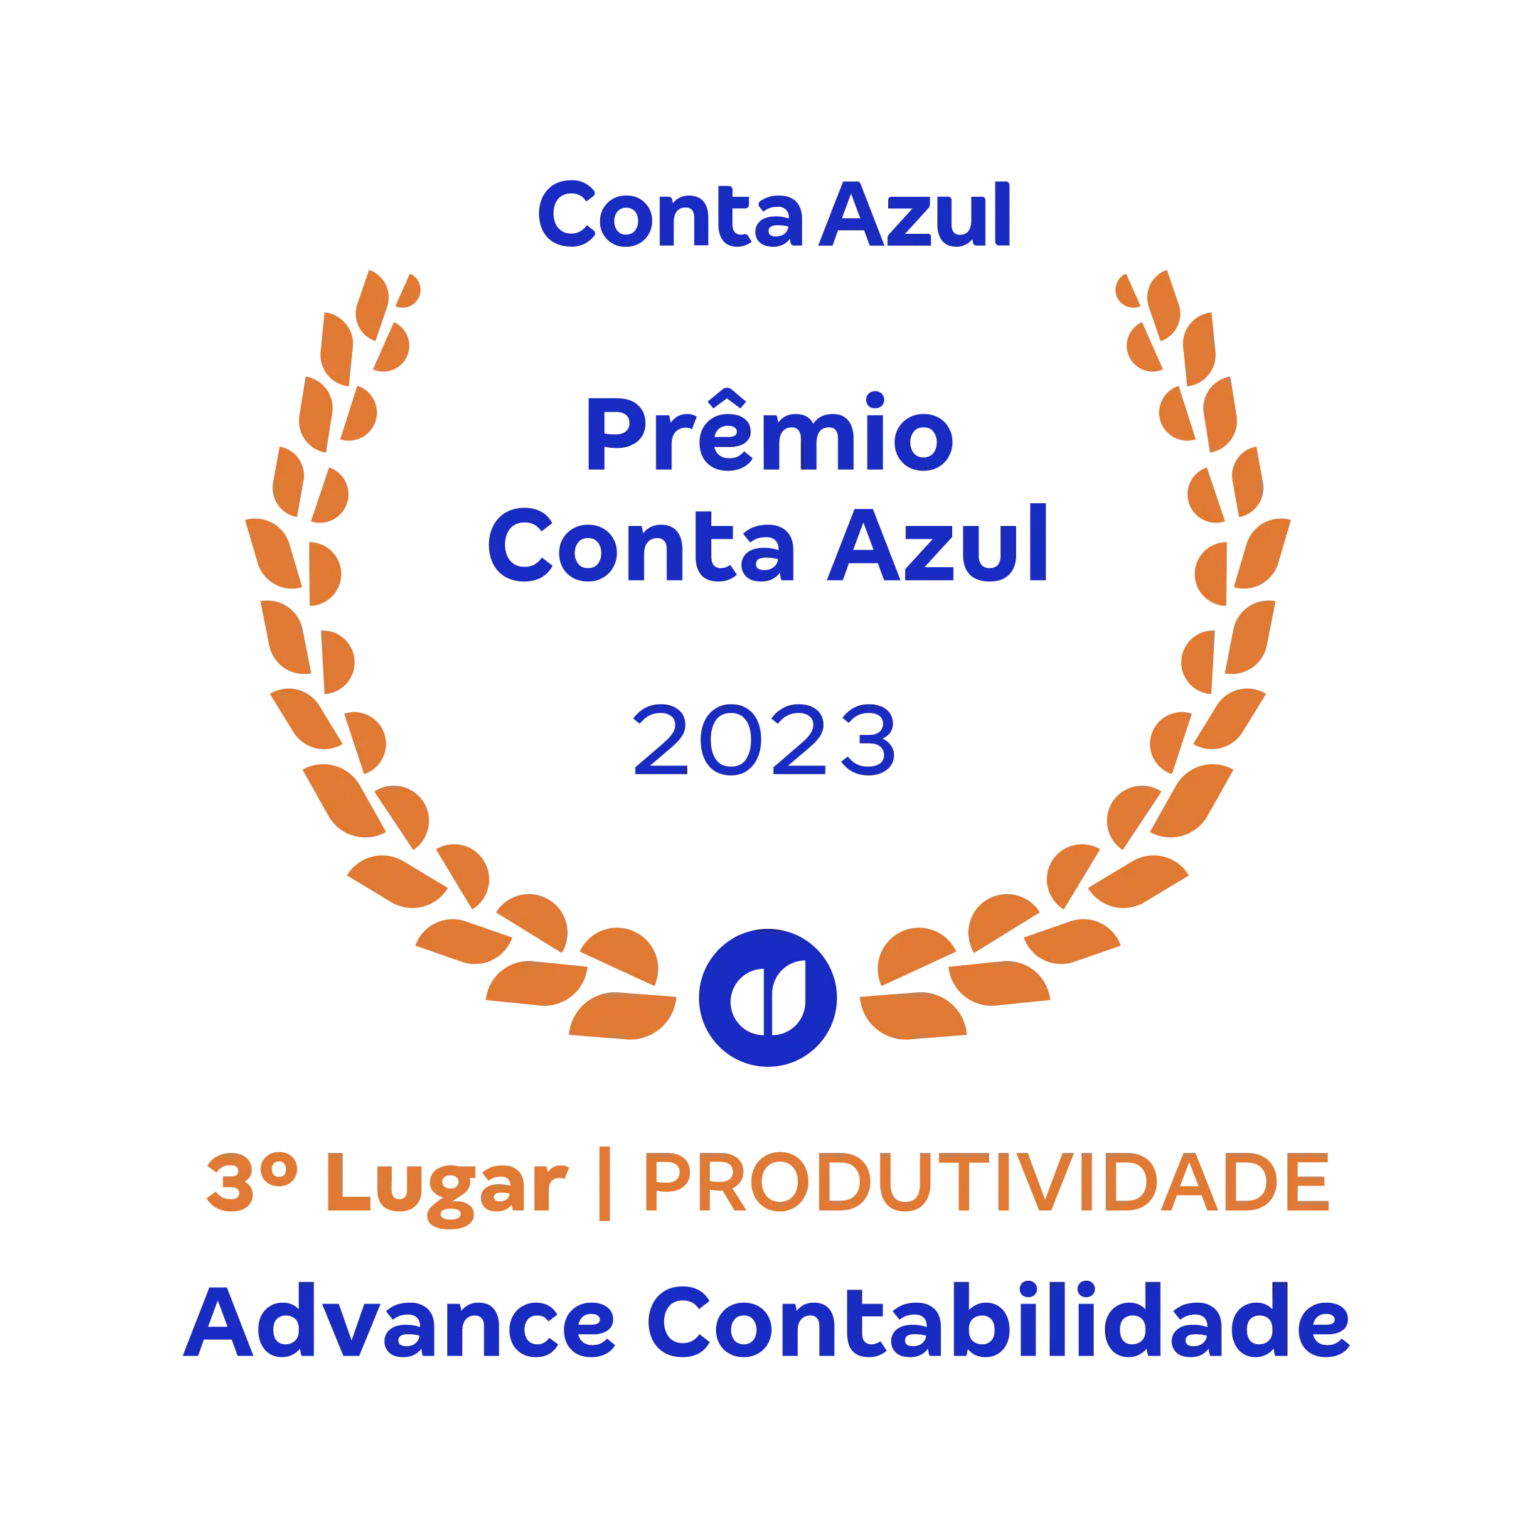 Image (26) - Contabilidade em Brasília - DF | Advance Contabilidade